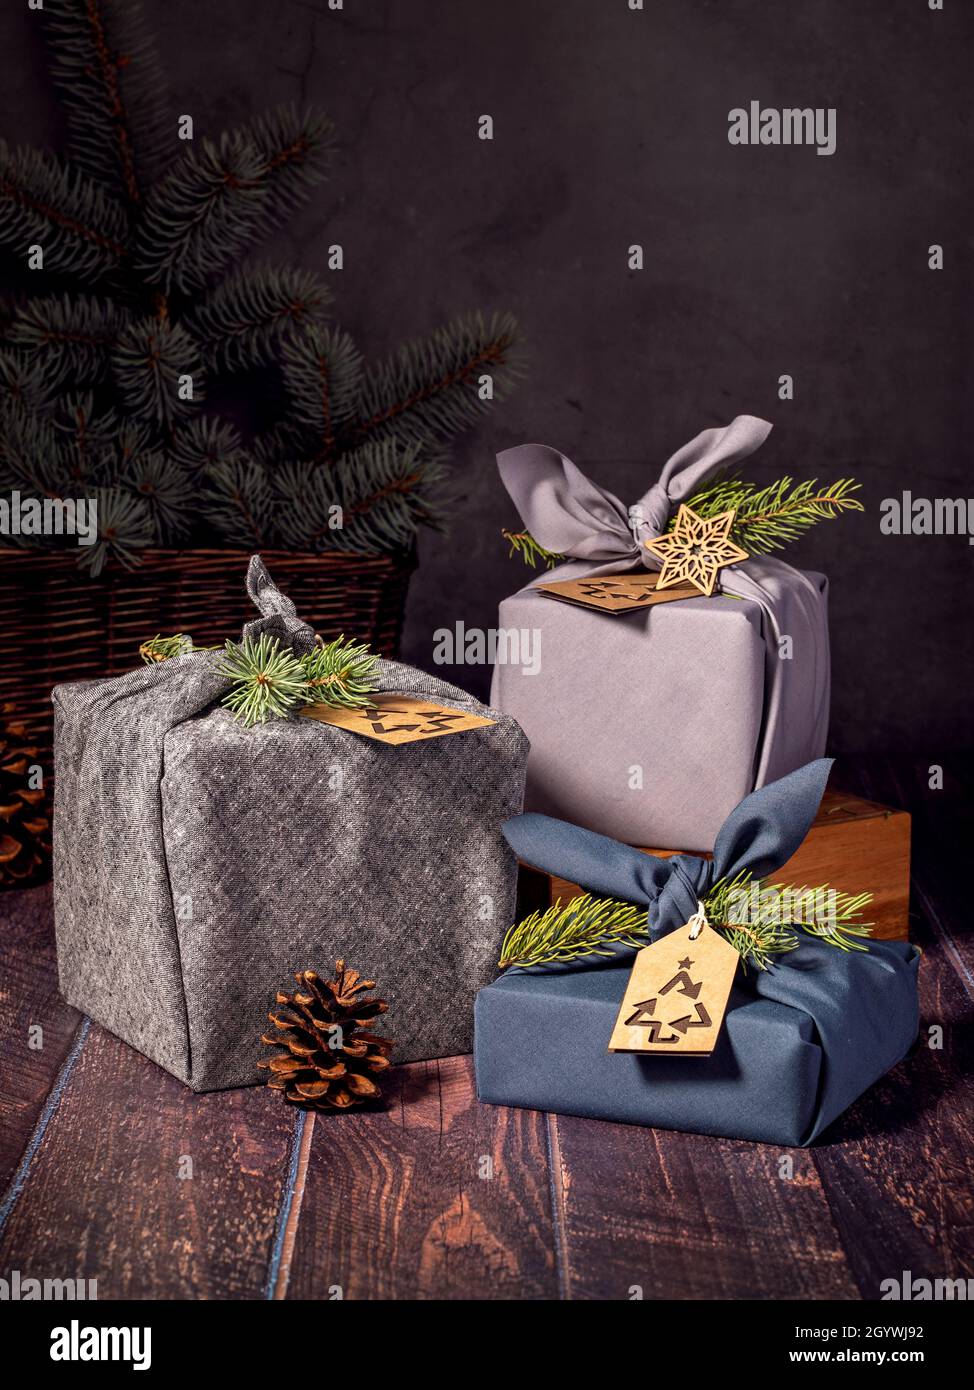 Tres cajas de regalo ecológicas estilo furoshiki sobre fondo oscuro. Concepto de reciclaje, reutilización y estilo de vida sostenible sin residuos de Navidad. Foto de stock